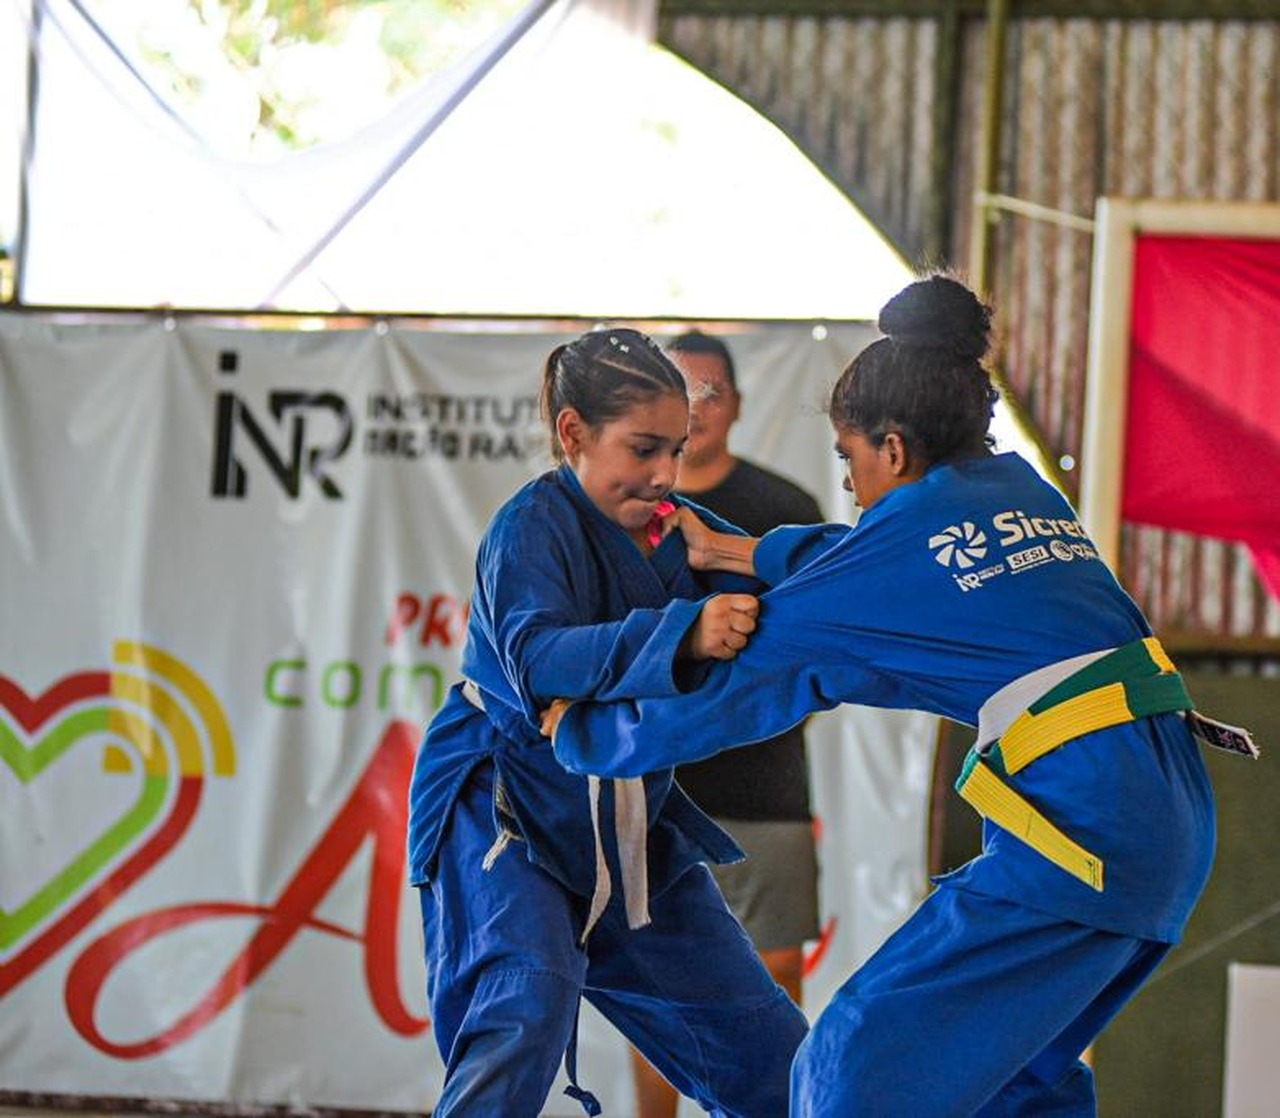 Projeto Compartilhe Amor e RD Top Team realizam o 2º Campeonato Interno de Jiu Jitsu, em Palmas; saiba mais